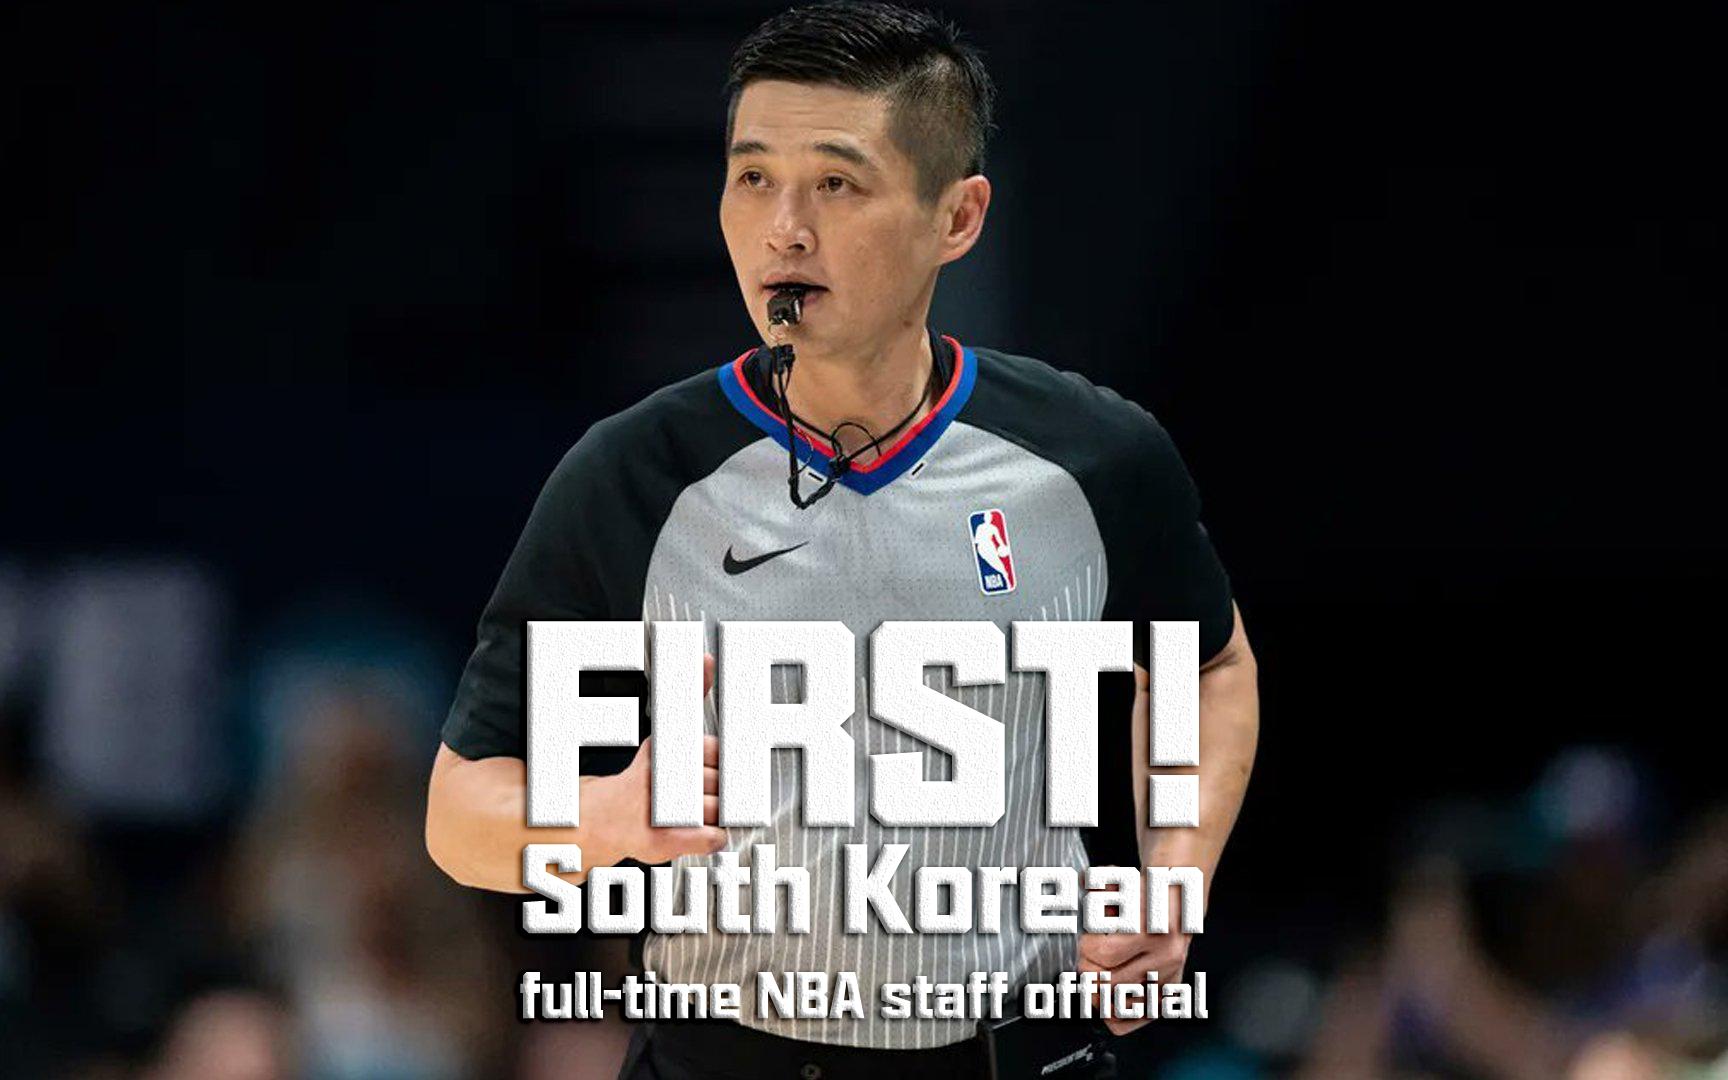 黄仁泰晋升至NBA 成为历史第一位韩国籍的NBA全职裁判(1)